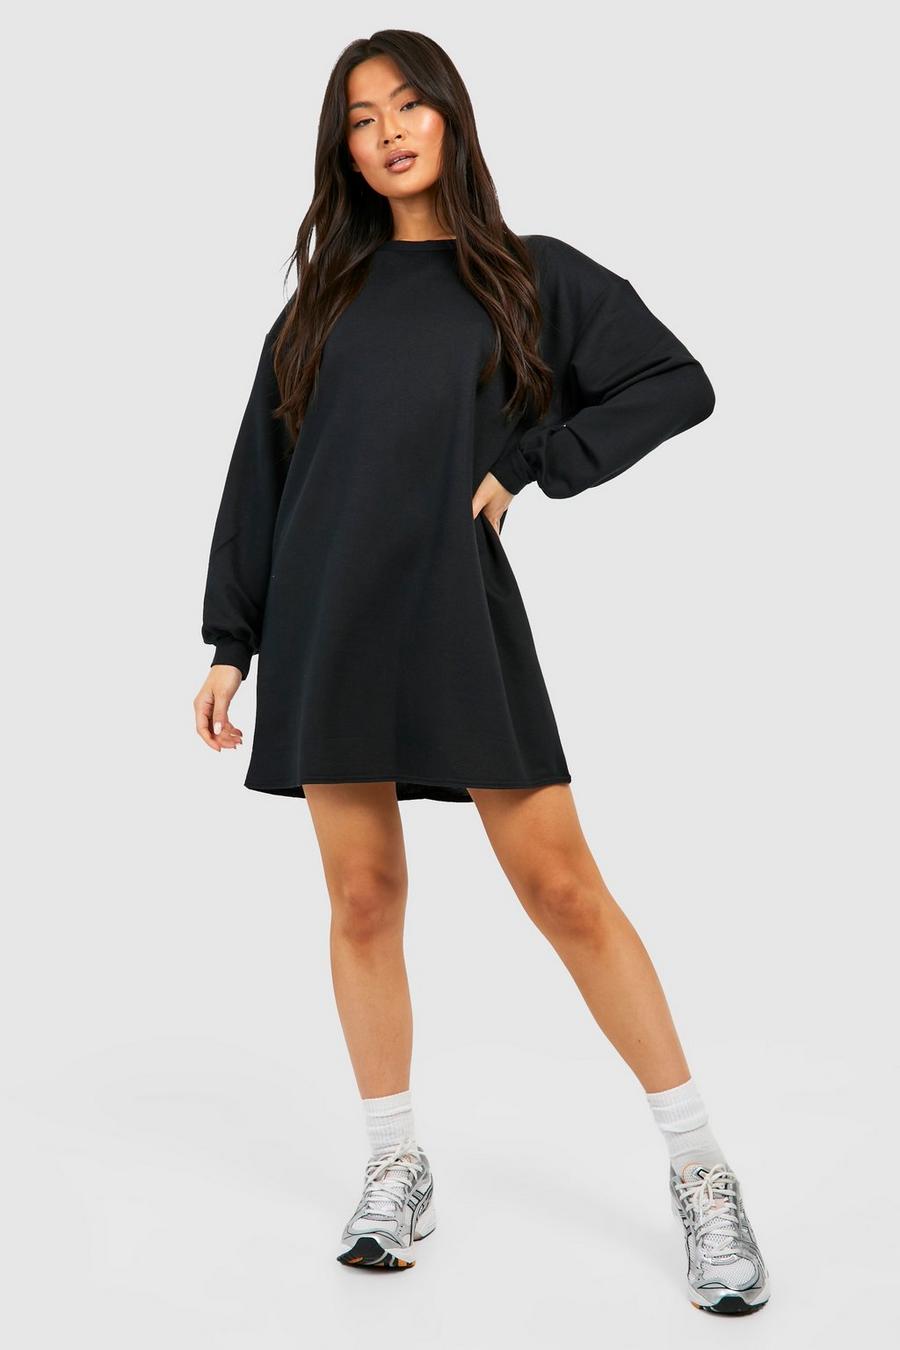 Black schwarz Oversized Sweater Dress